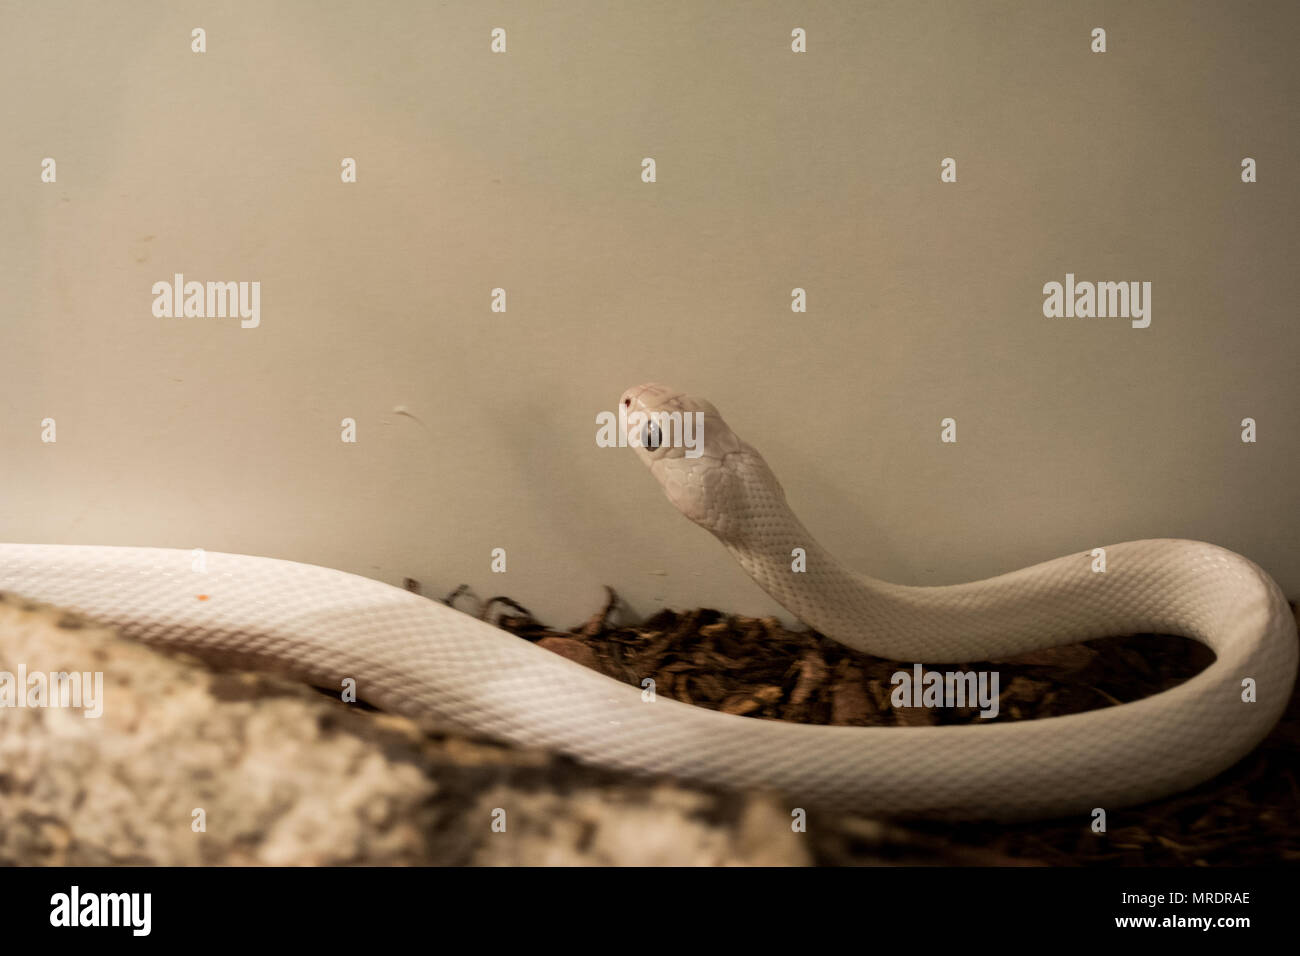 Pantherophis obsoleta / Rat snake Stock Photo